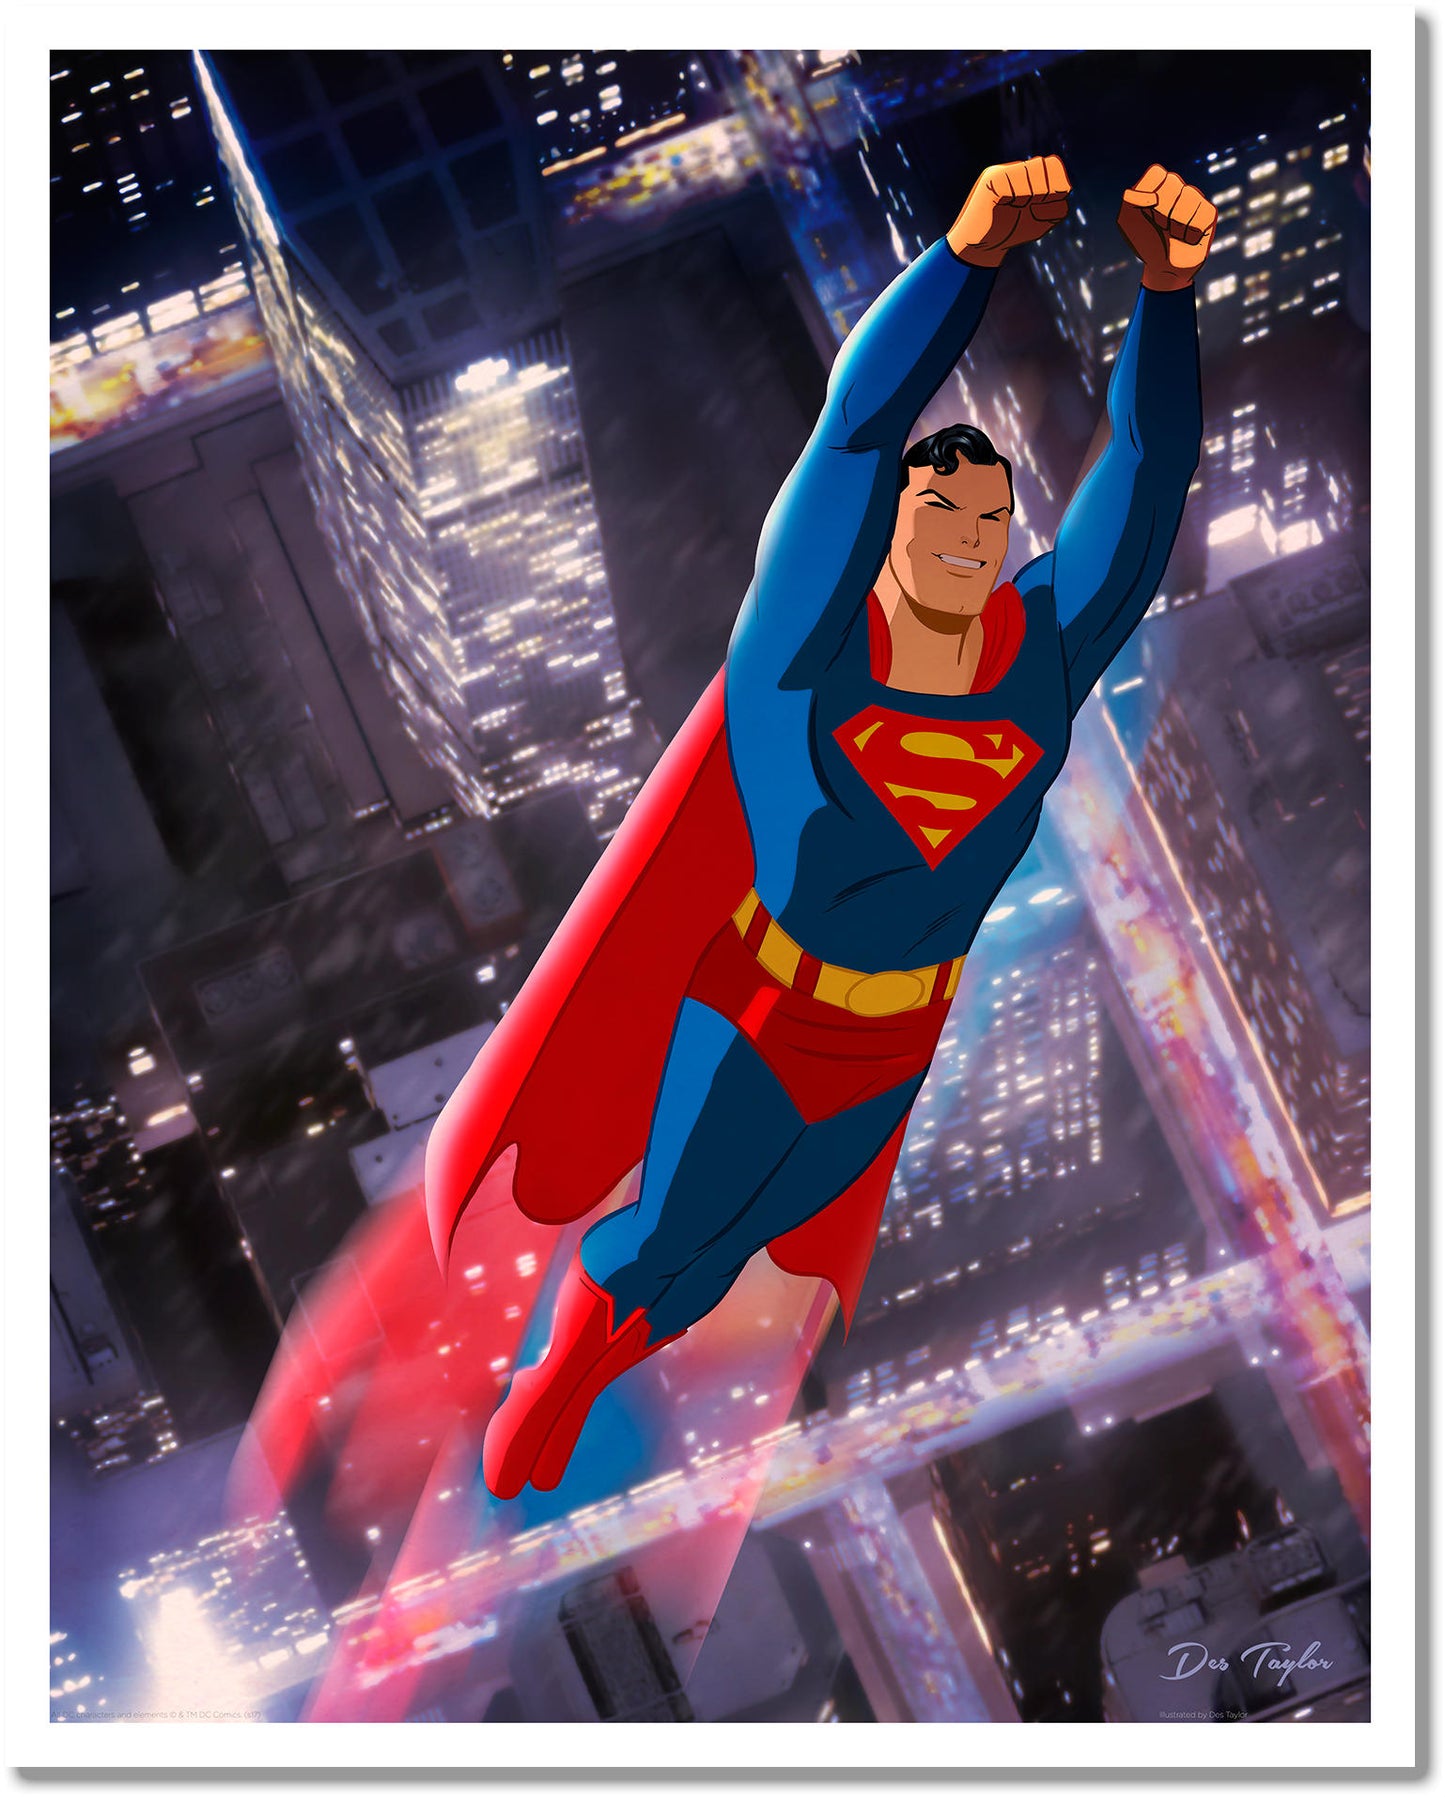 Des Taylor "Superman - Night" Variant